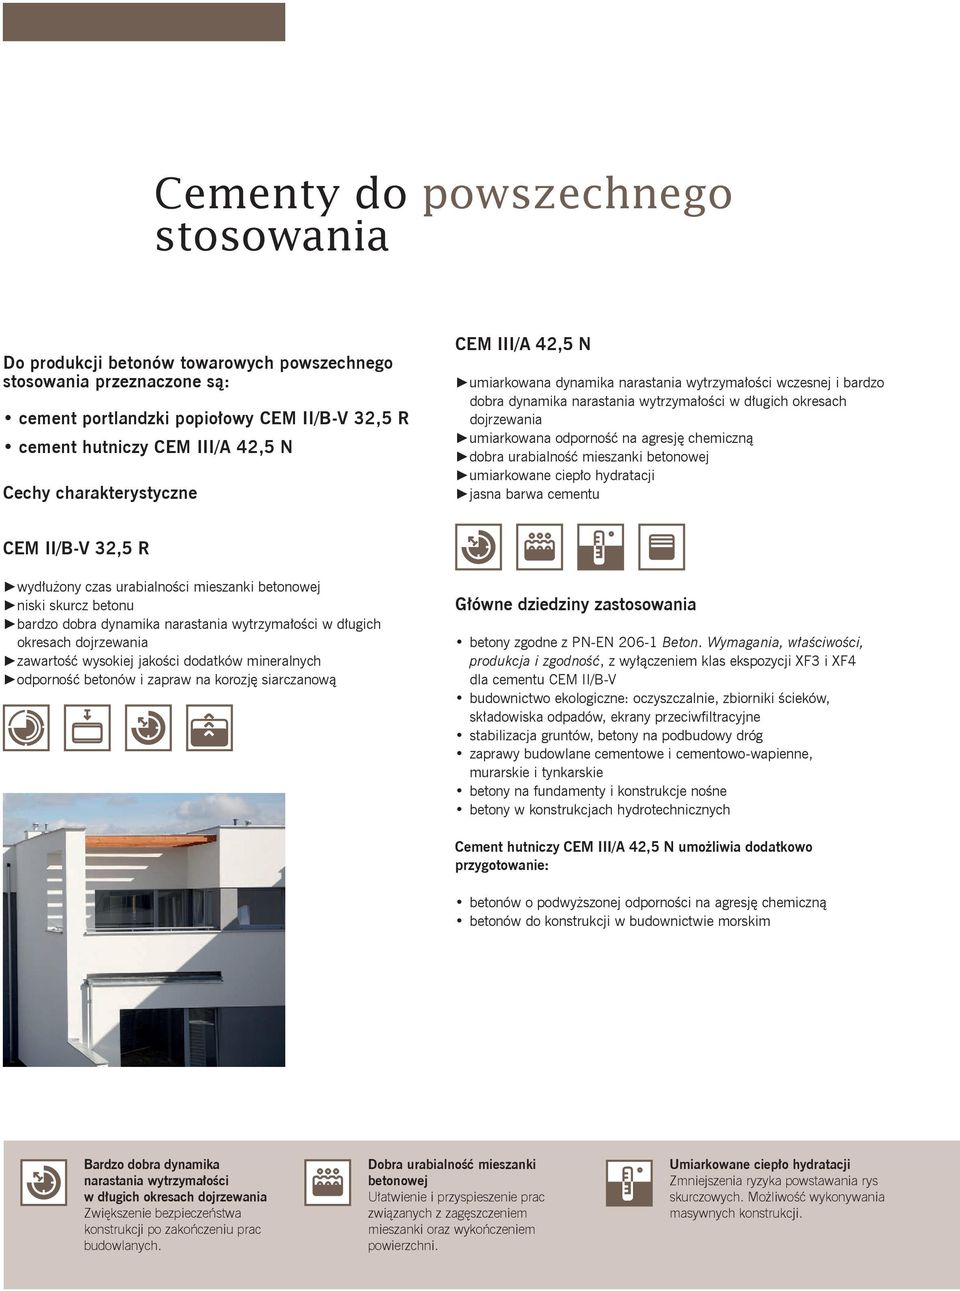 agresję chemiczną dobra urabialność mieszanki betonowej umiarkowane ciepło hydratacji jasna barwa cementu CEM II/B-V 32,5 R wydłużony czas urabialności mieszanki betonowej niski skurcz betonu bardzo